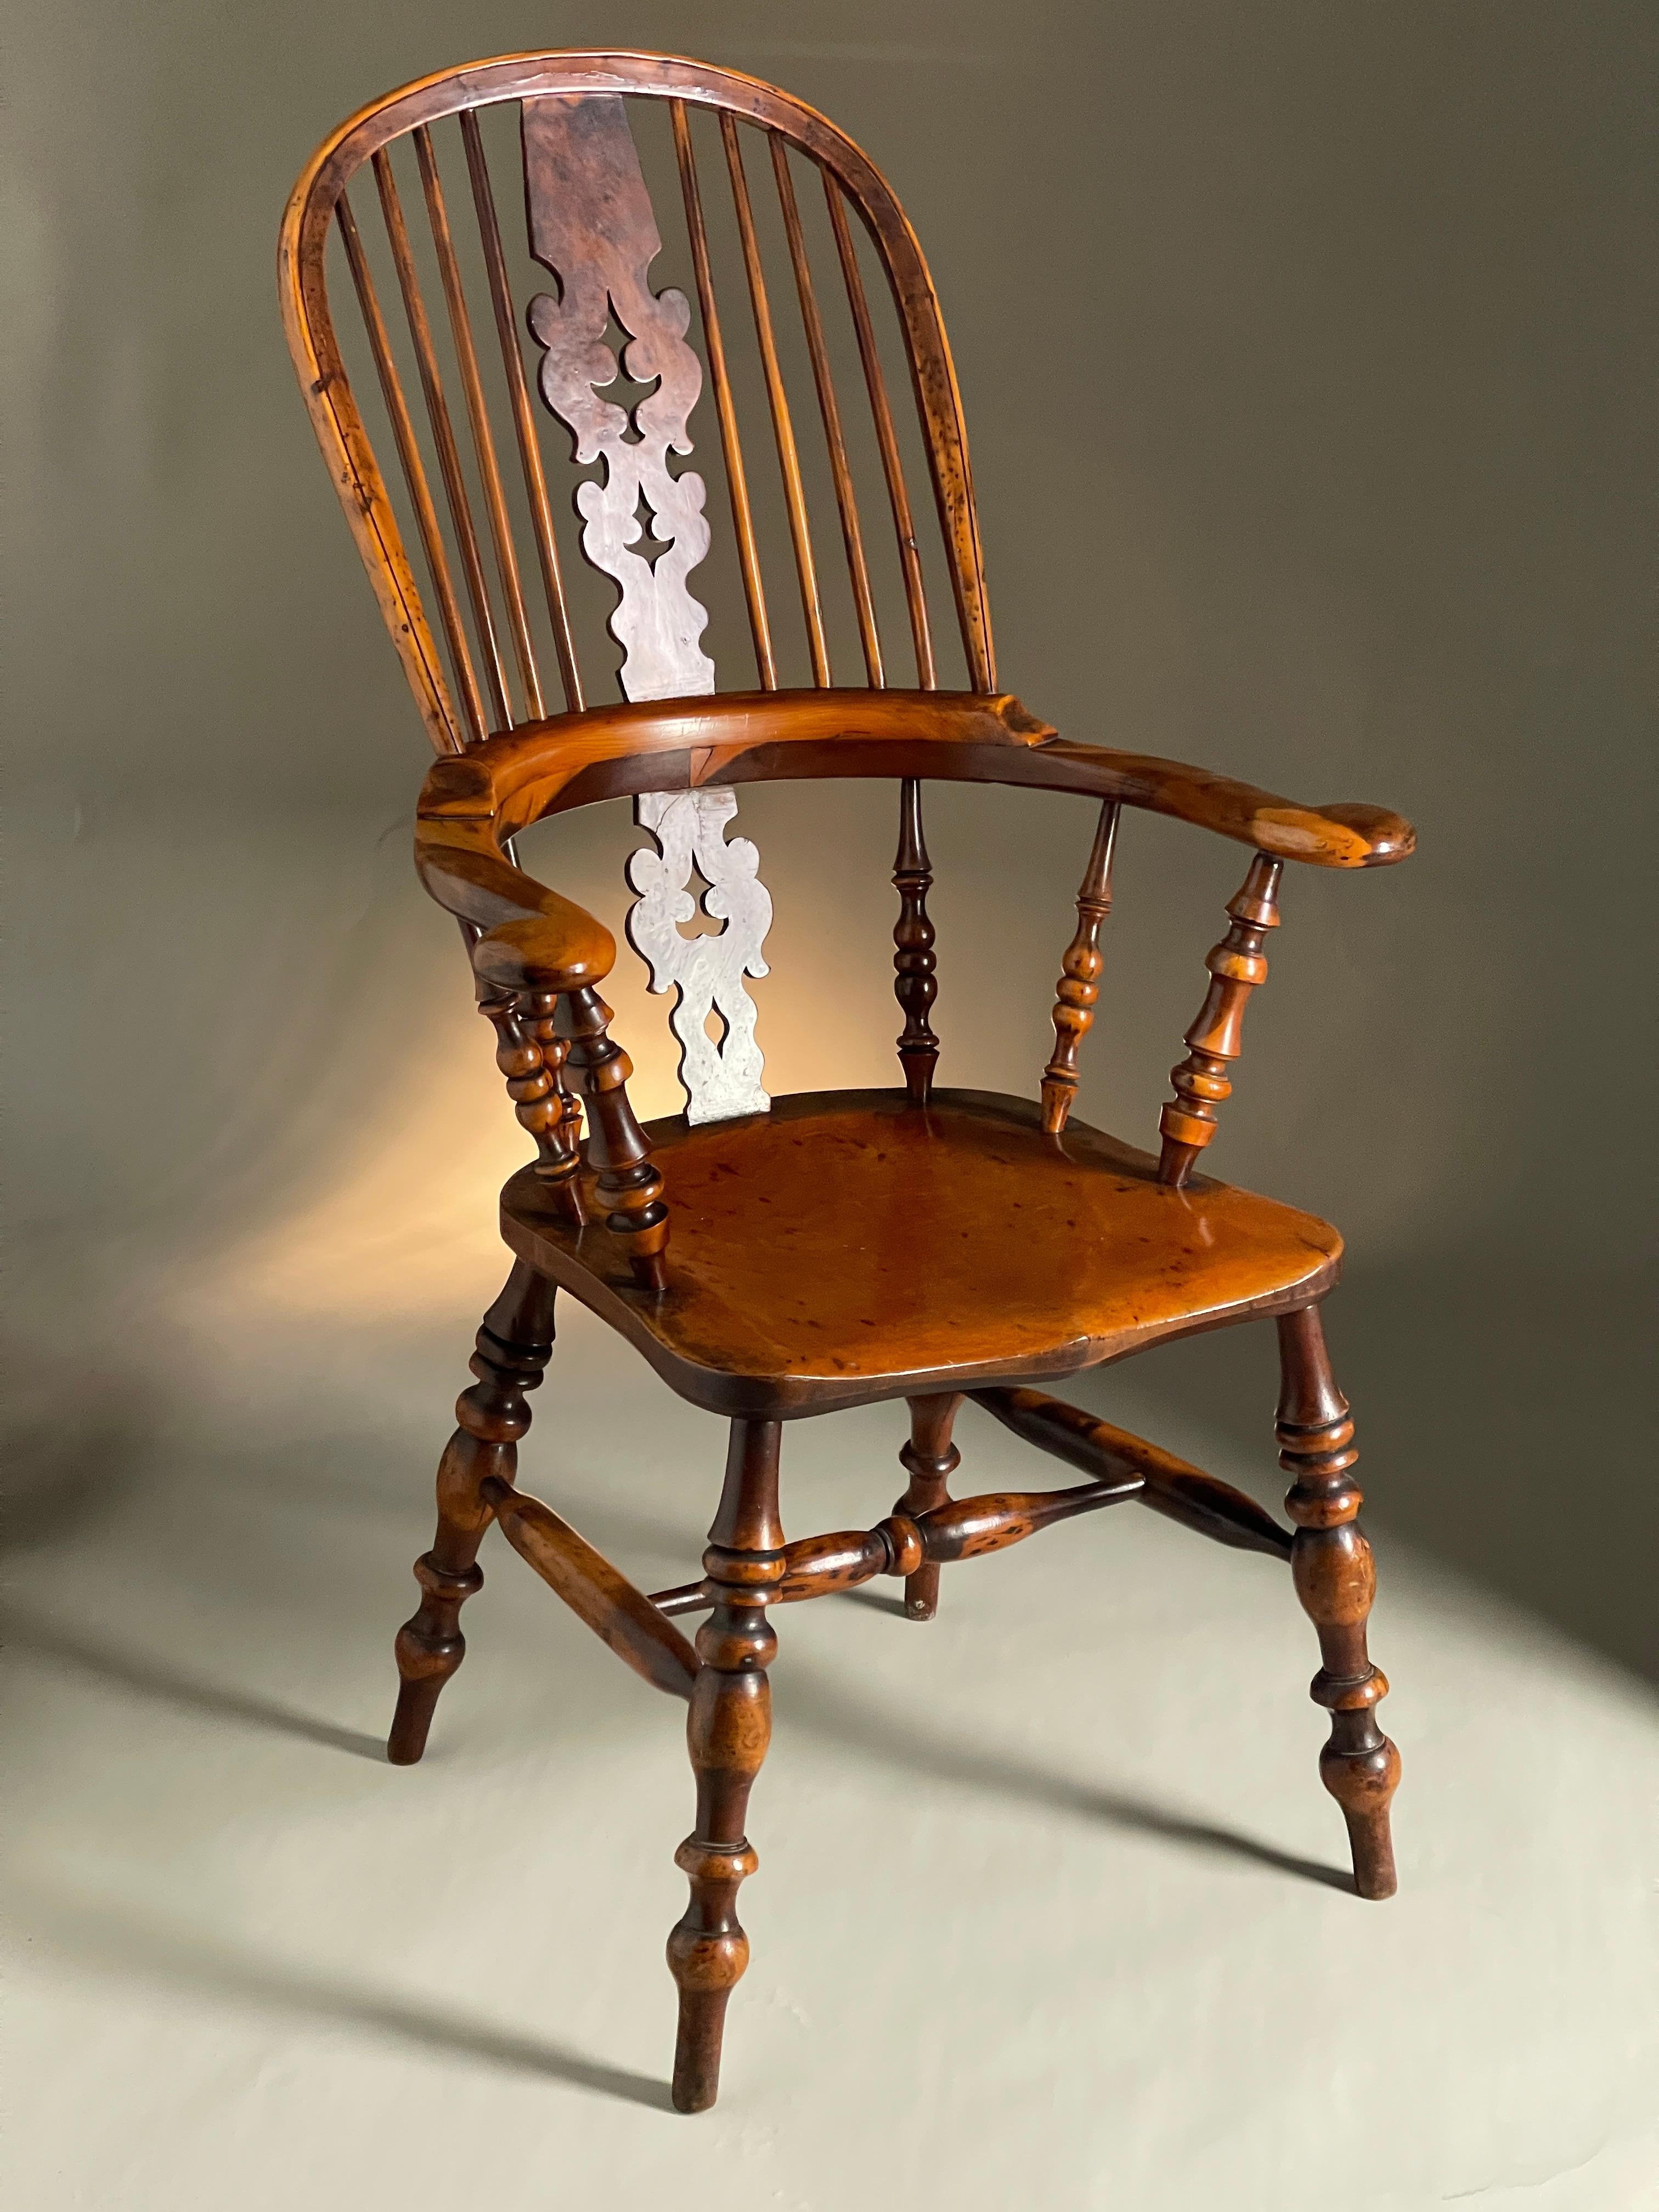 Wunderschöner Eiben-Windsor-Stuhl mit hervorragender Farbe und Patina aus dem 19. Jahrhundert mit breitem Arm und Gratleisten. 
Größe 115 cm hoch 68 cm breit 57 cm tief

